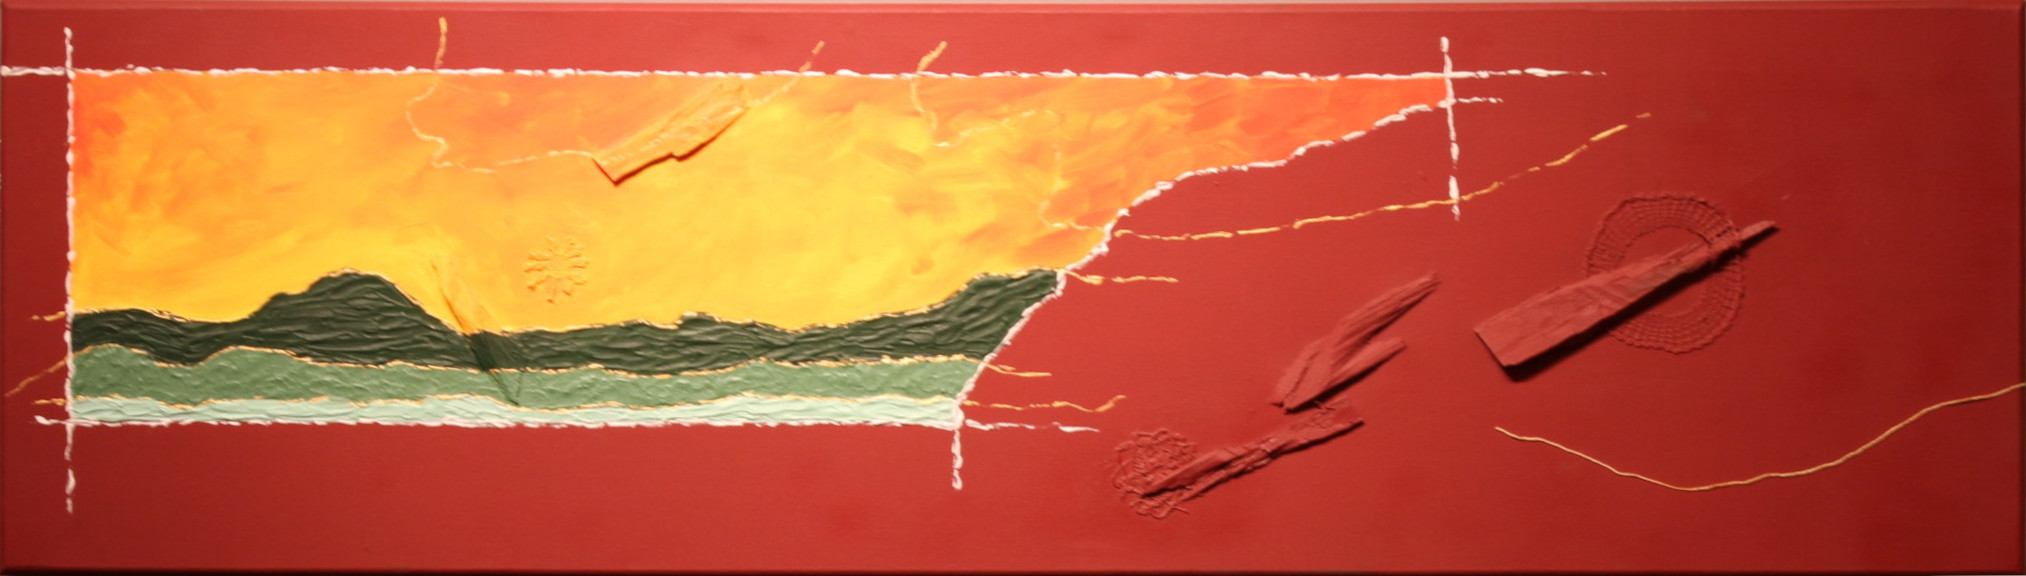 Divino Espírito Santo (Ilha em cores III), Marcos Nakamura, mista, 40x104cm. Acervo BADESC.